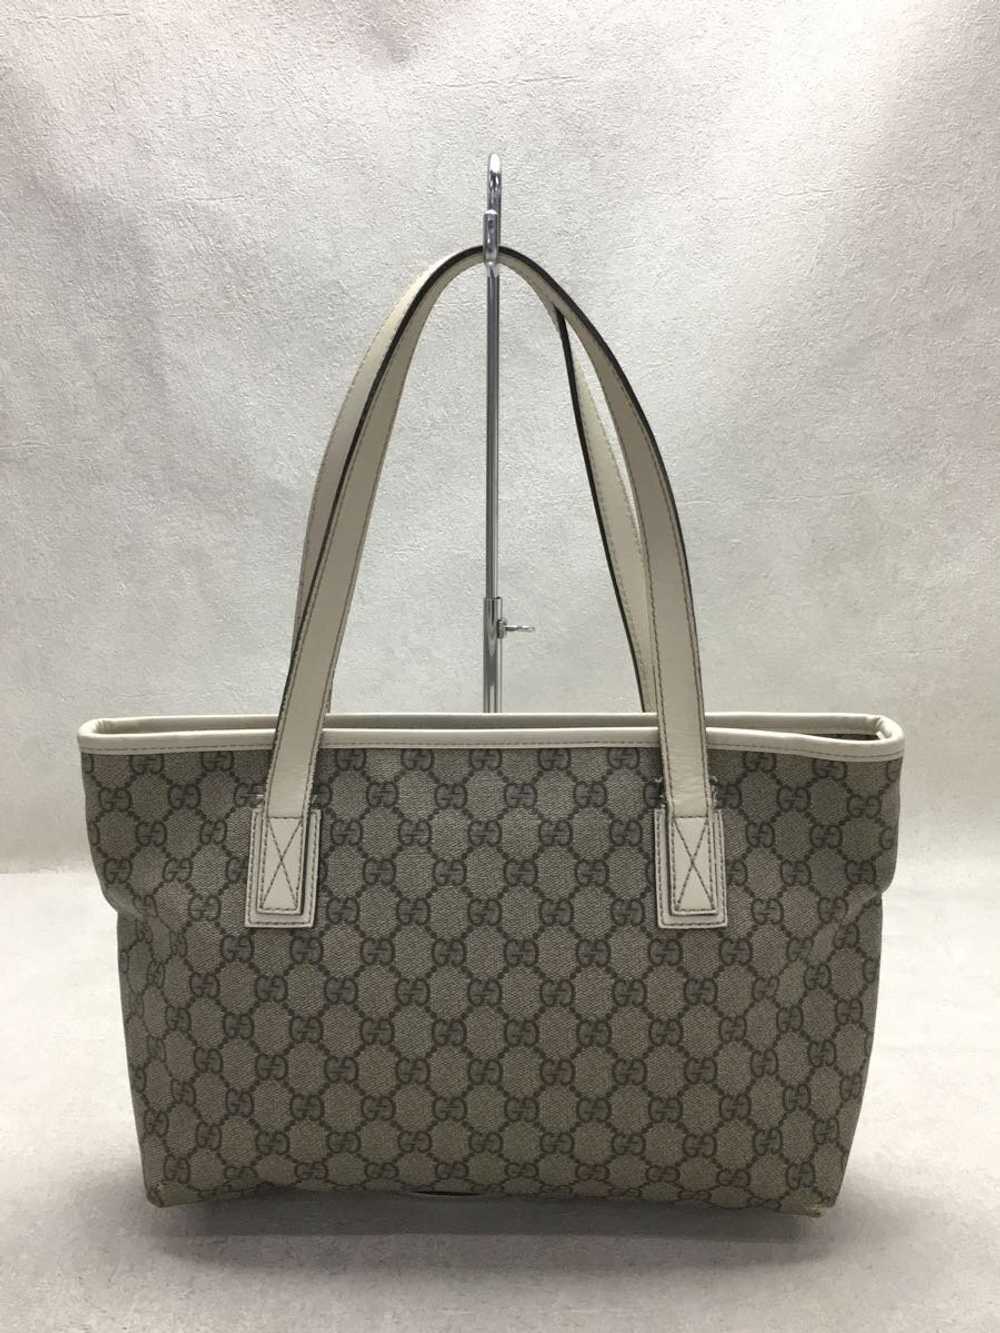 [Japan Used Bag] Used Gucci Handbag/Pvc Bag - image 4